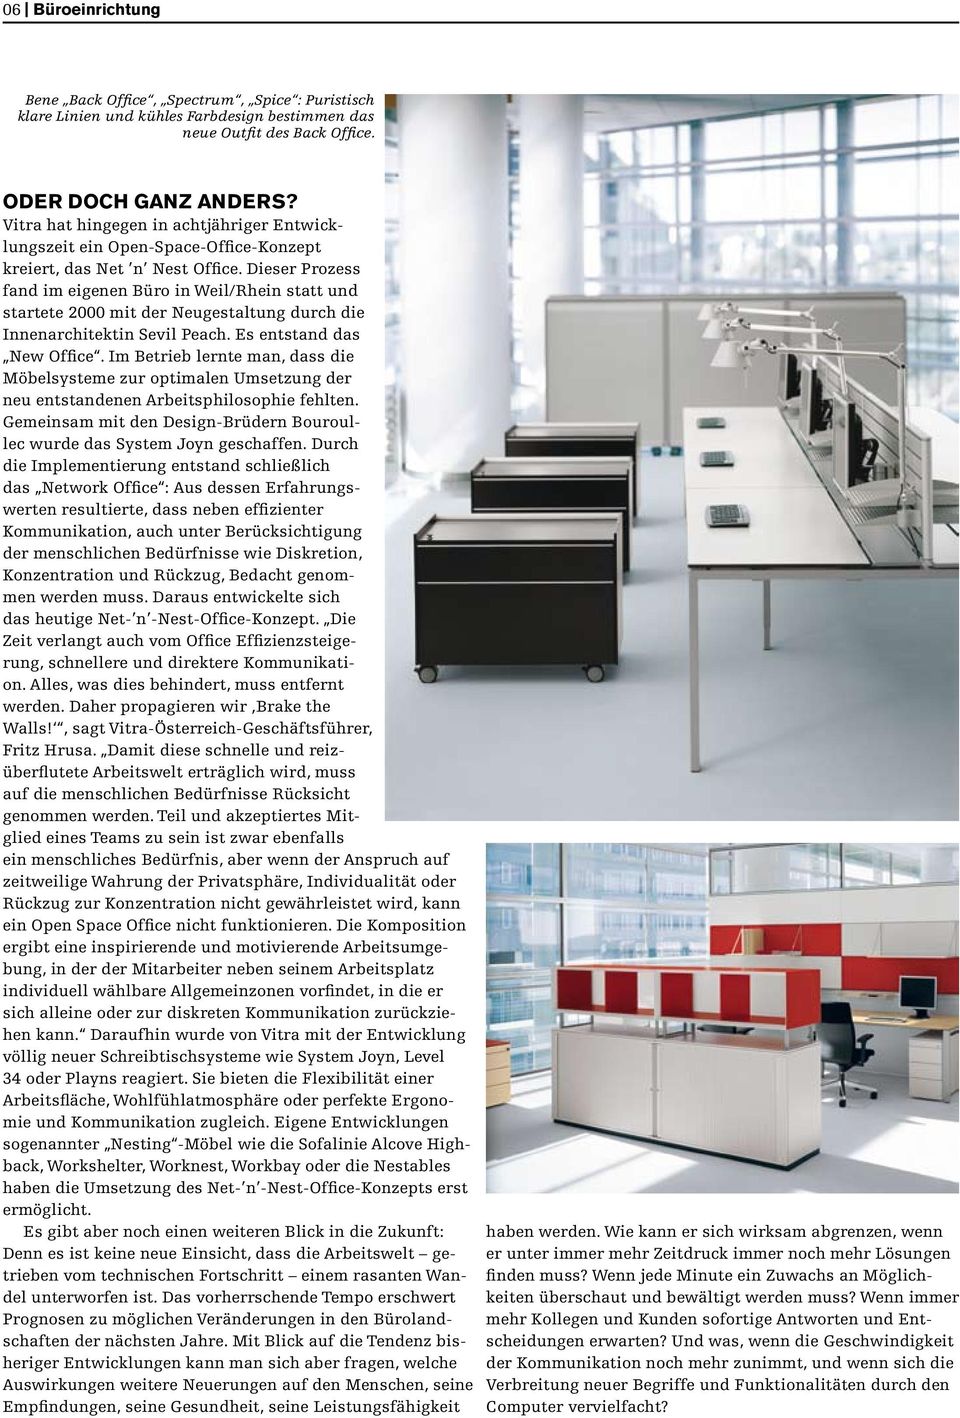 Dieser Prozess fand im eigenen Büro in Weil/Rhein statt und startete 2000 mit der Neugestaltung durch die Innenarchitektin Sevil Peach. Es entstand das New Office.